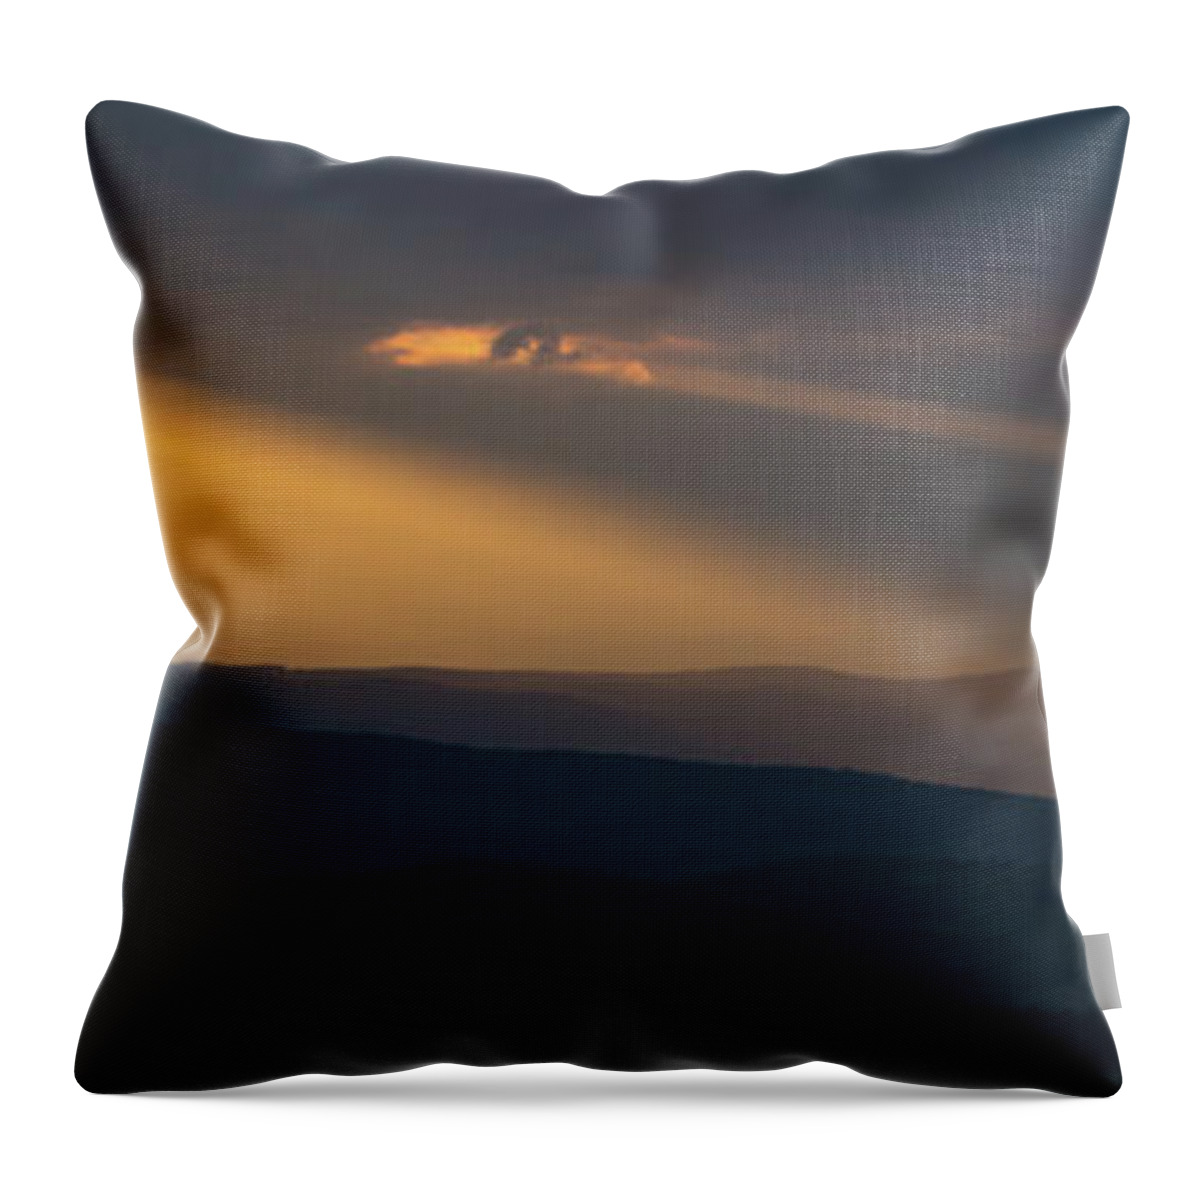 Sun Throw Pillow featuring the photograph Sun rays through cloudy sky by Viktor Wallon-Hars